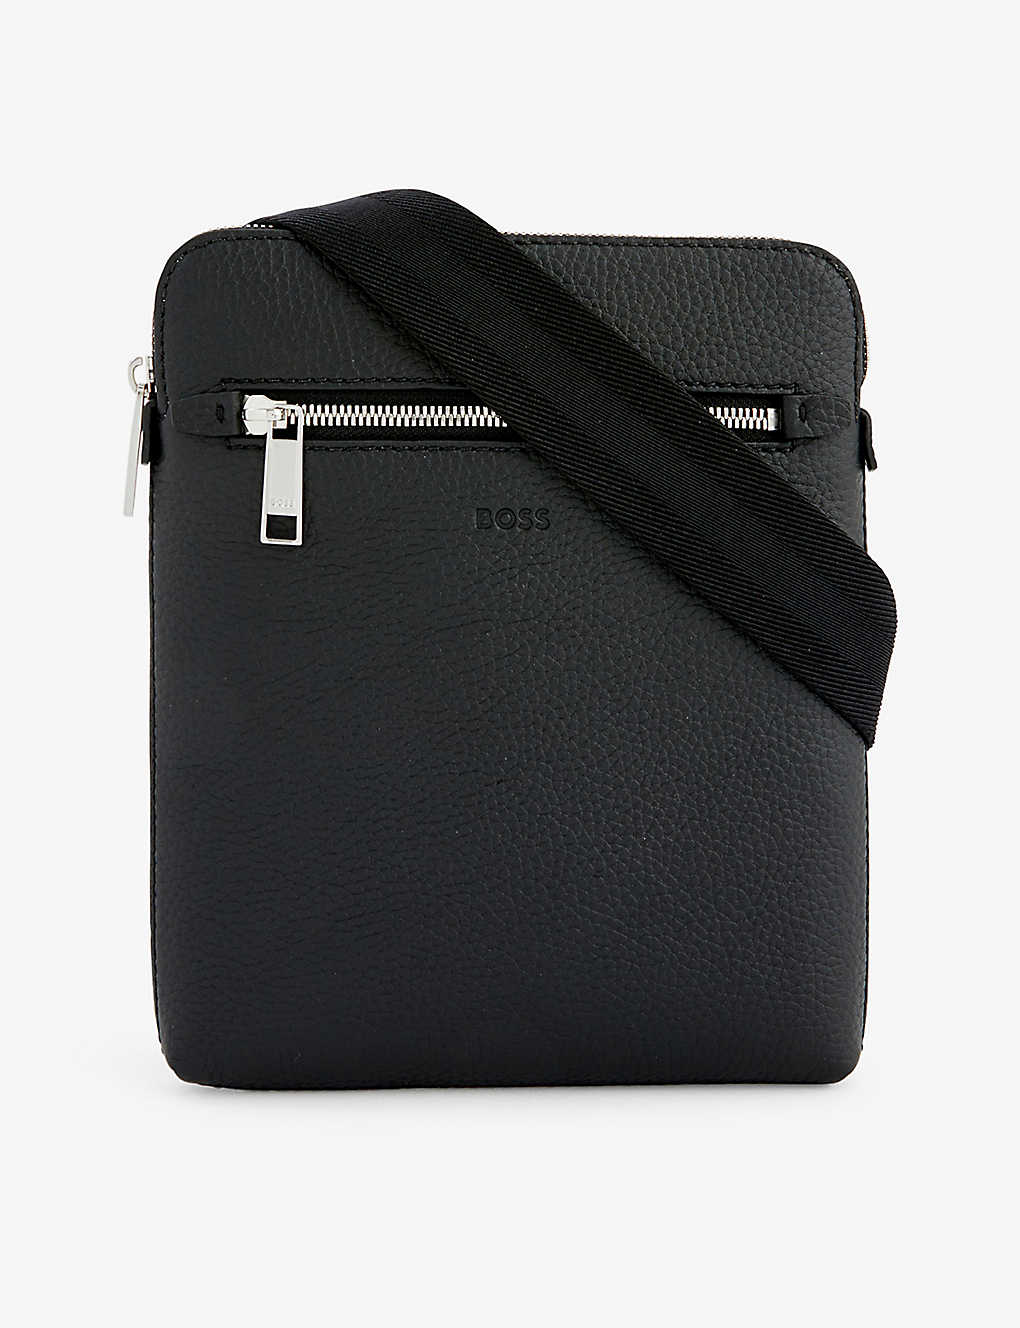 Hugo Boss Boss Mens Black Crosstown Leather Cross-body Bag